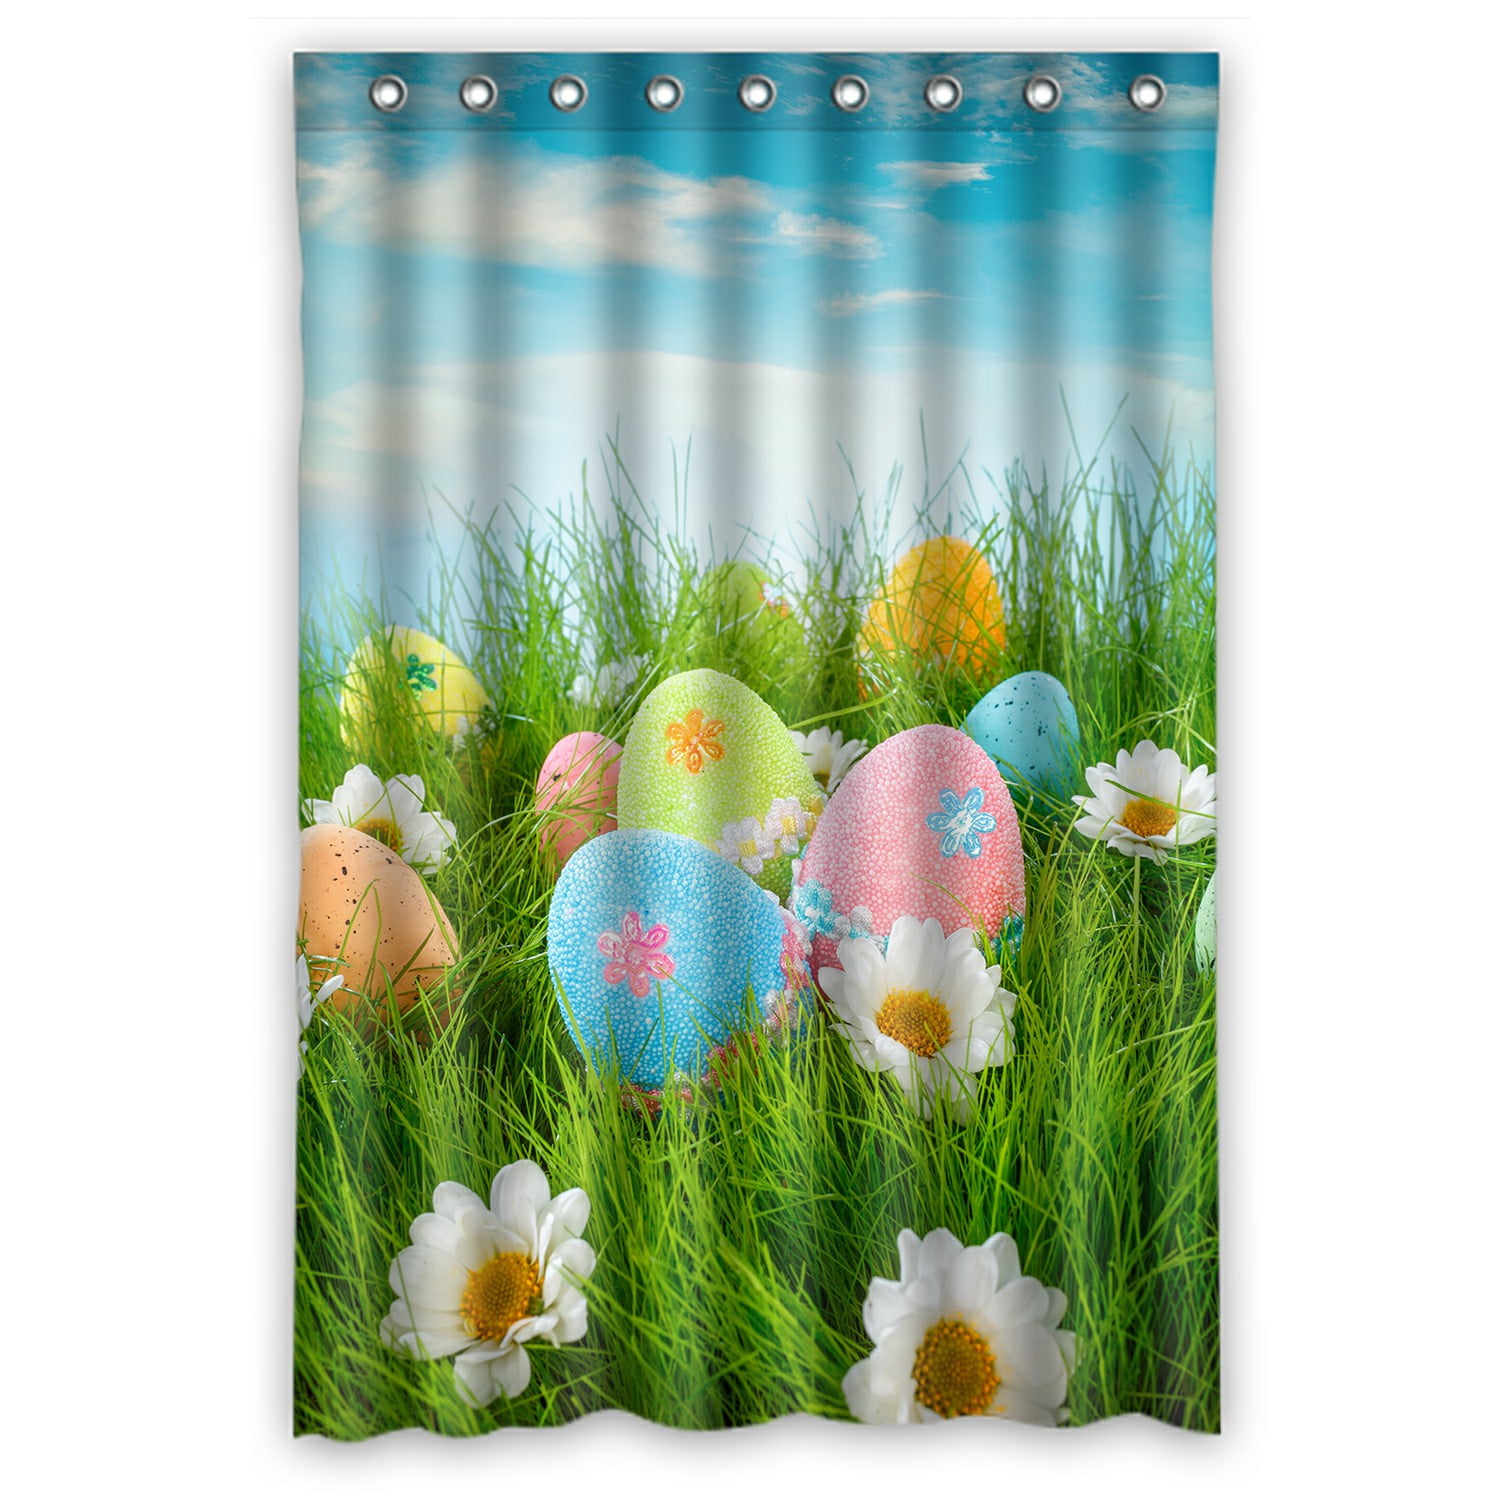 Easter Eggs Grassland Outdoor Shower Curtain Waterproof Fabric Bathroom Mat Set 